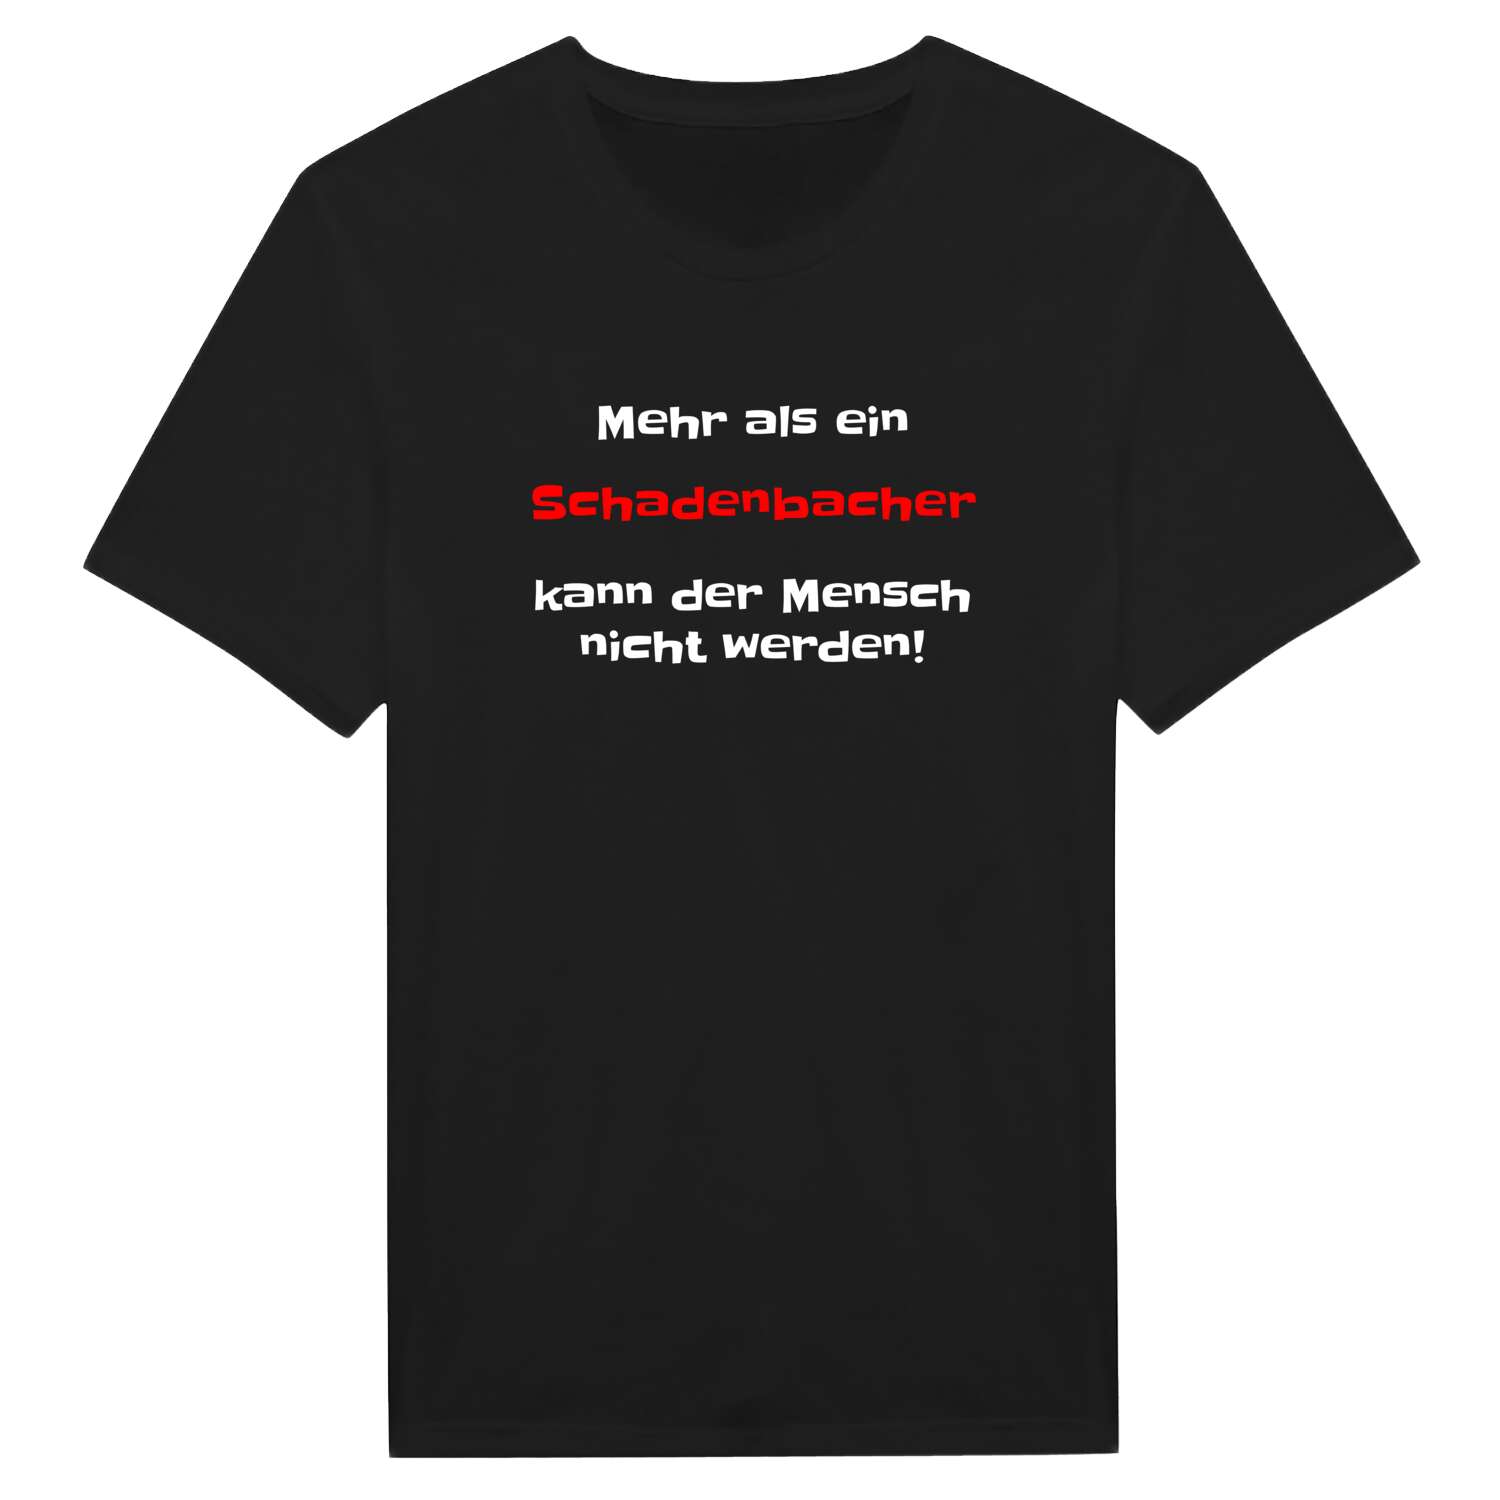 Schadenbach T-Shirt »Mehr als ein«